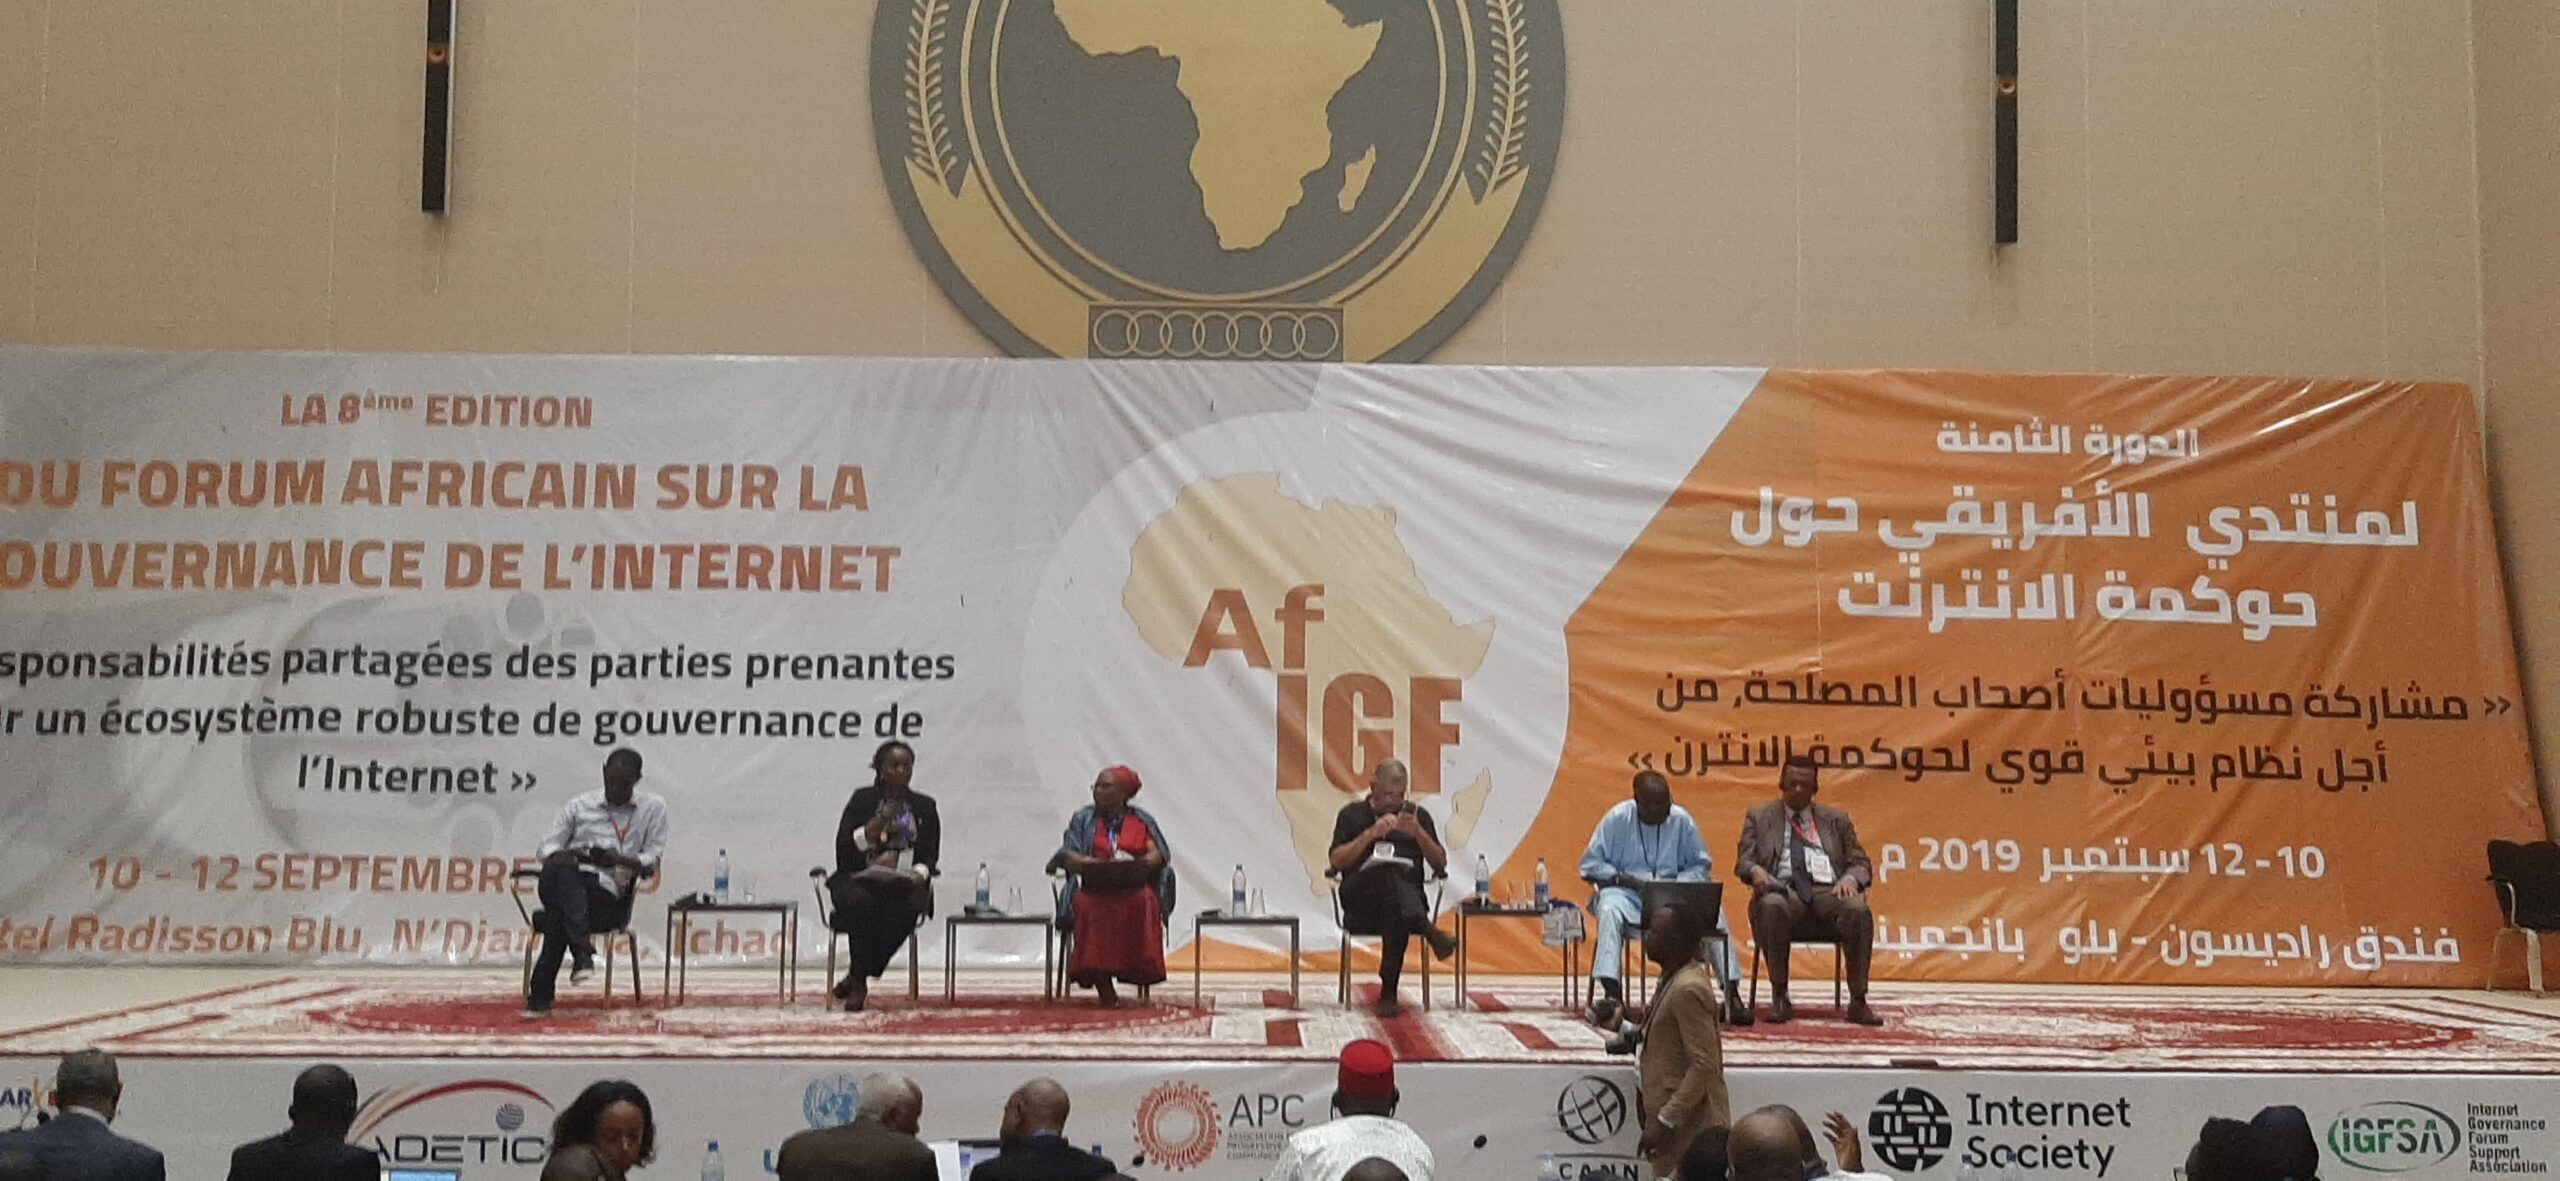 Forum africain sur la gouvernance de l’internet : les travaux de la 8ème édition sont lancés